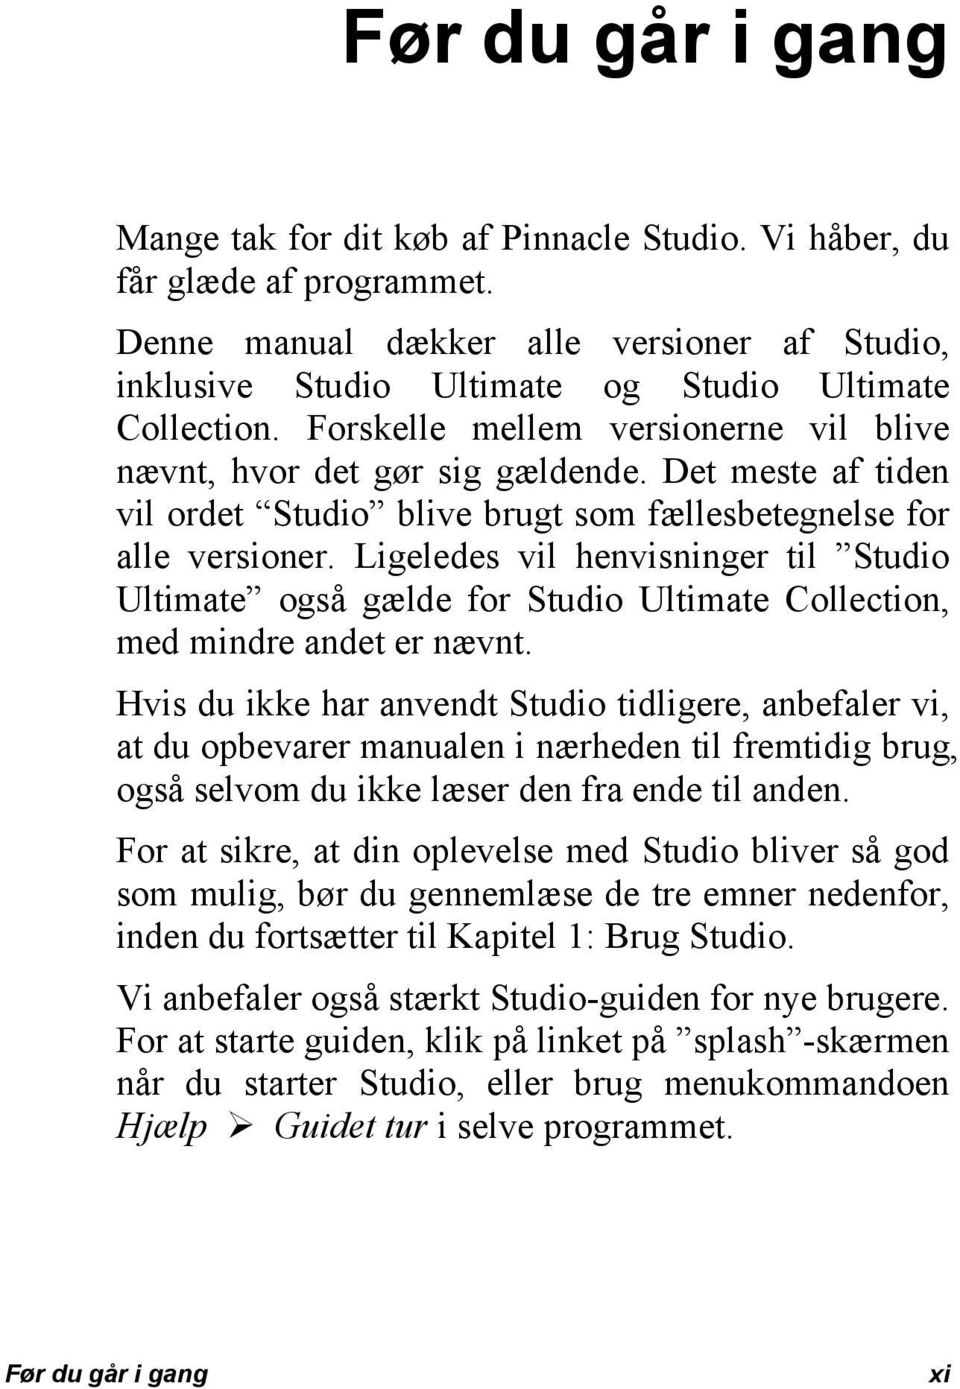 Ligeledes vil henvisninger til Studio Ultimate også gælde for Studio Ultimate Collection, med mindre andet er nævnt.